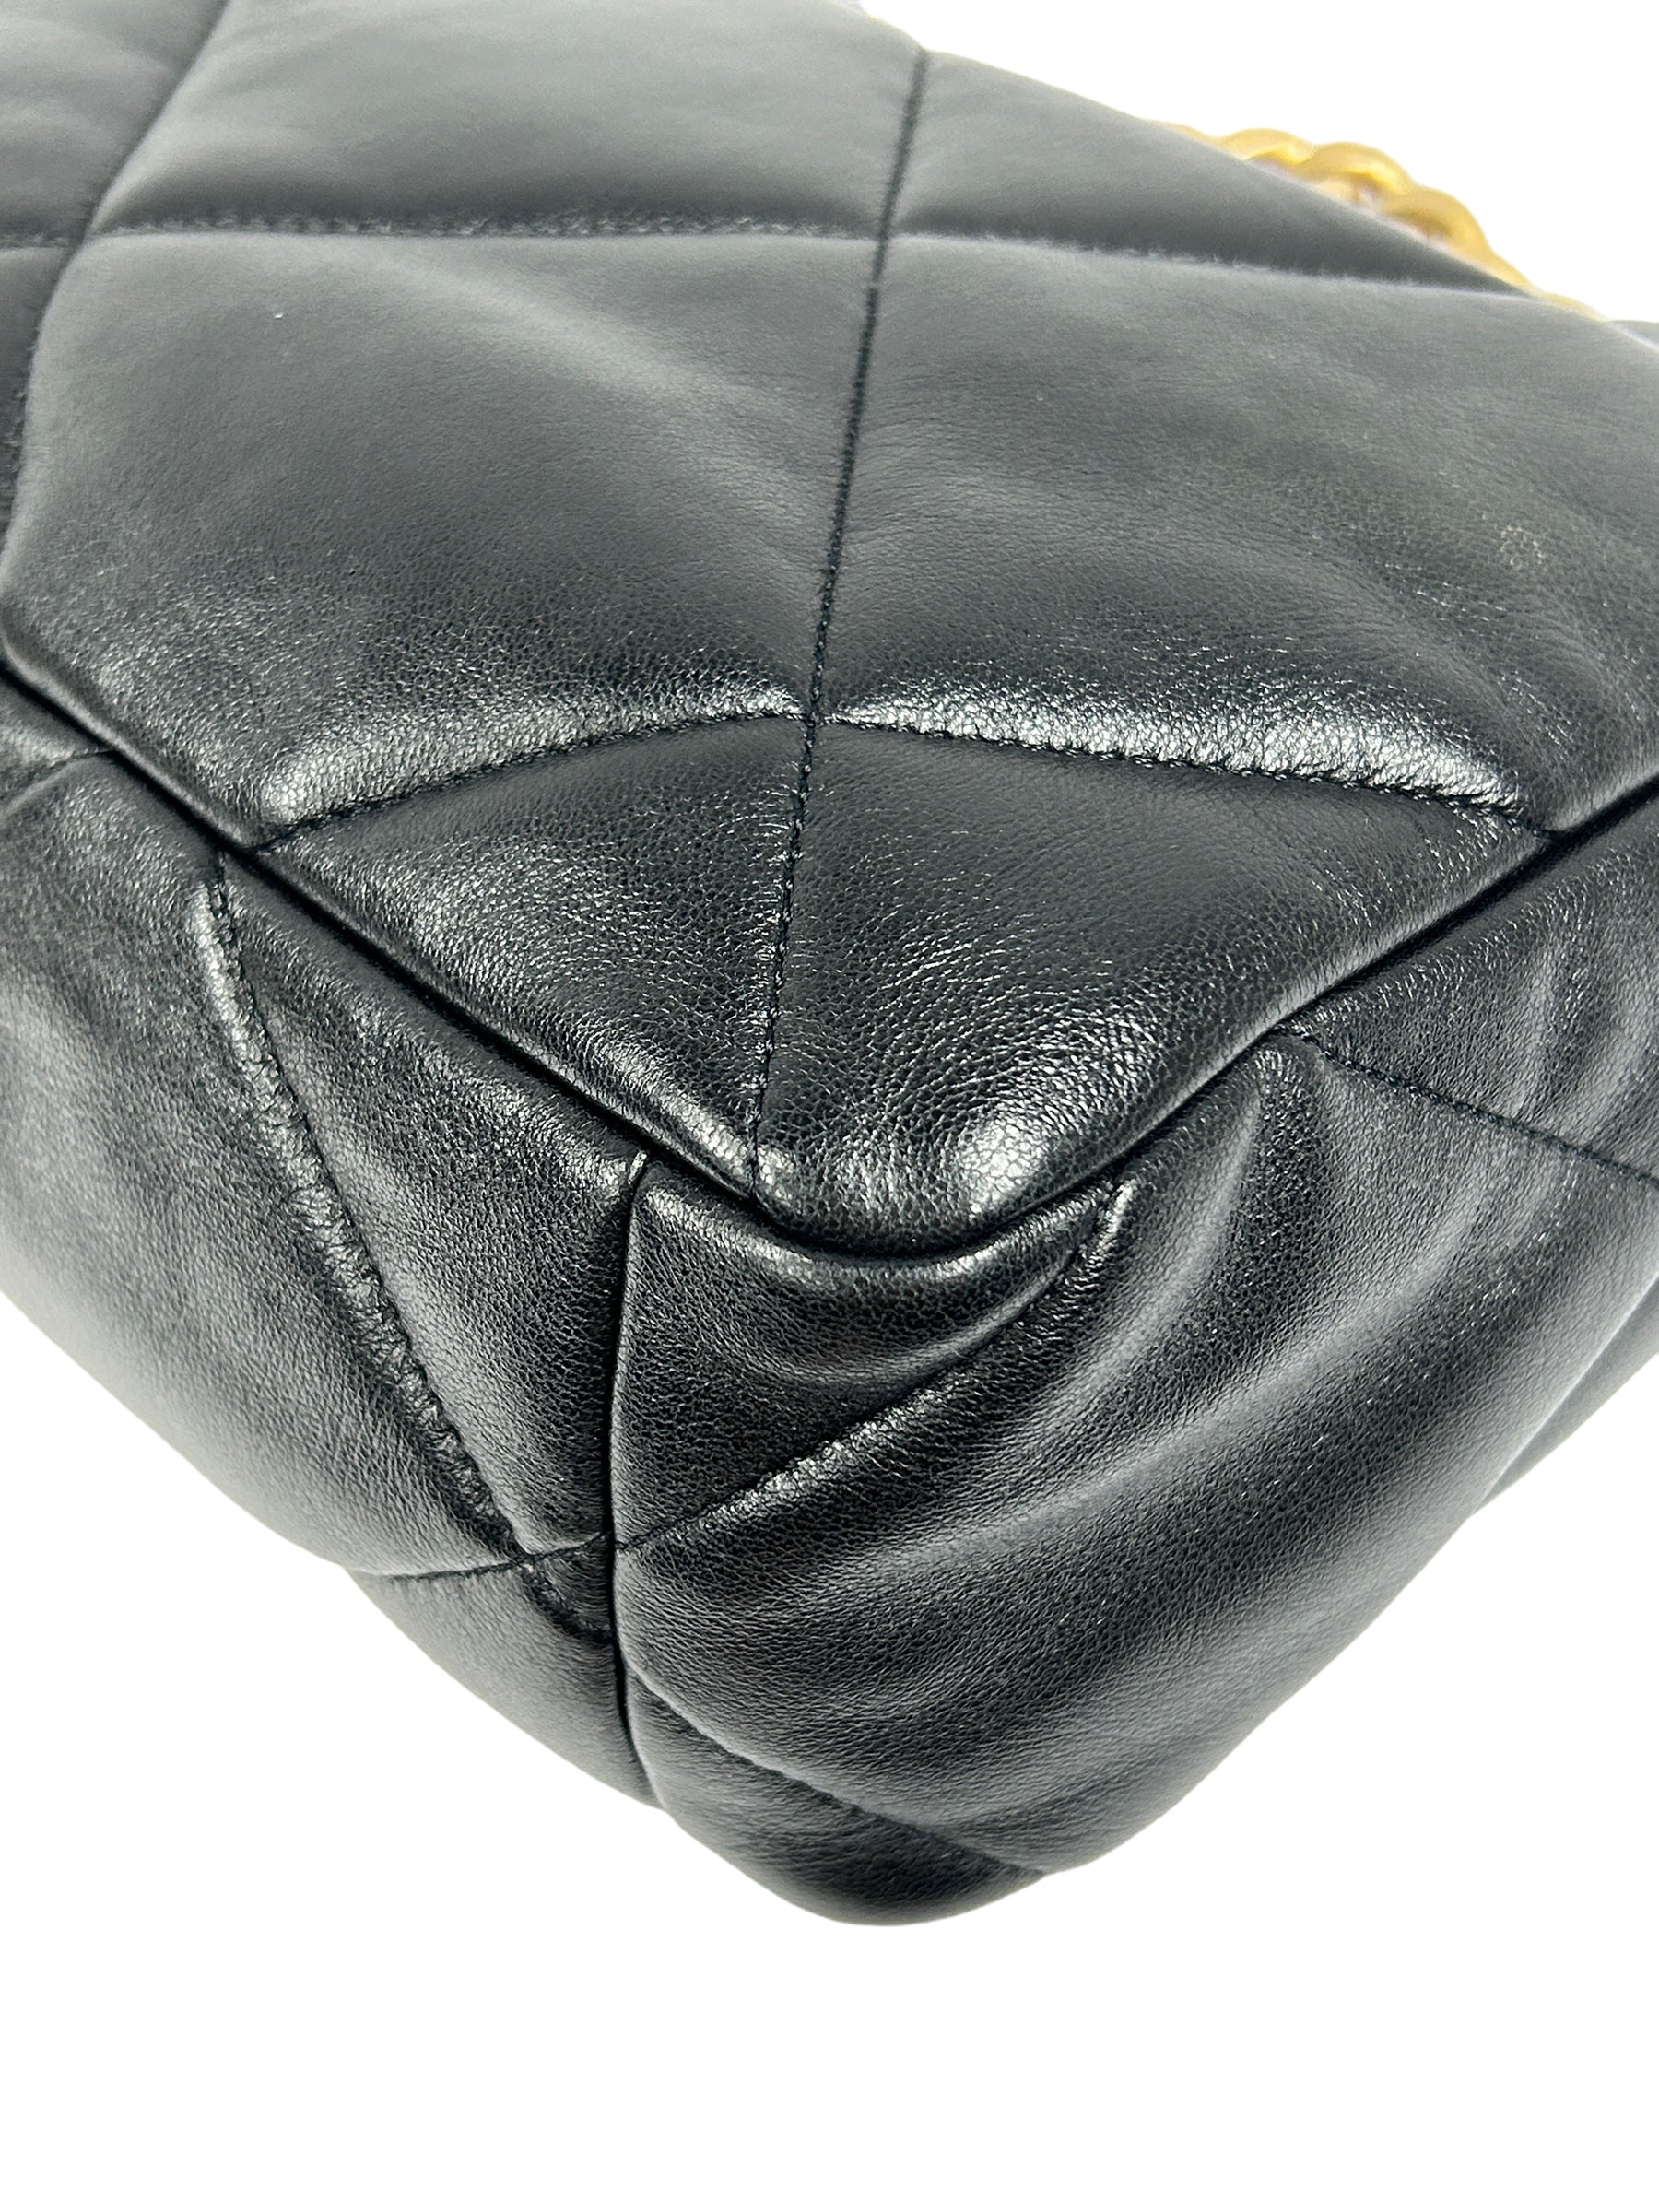 Black Lambskin Quilted Medium 19 Flap Bag w/ GHW/AGHW/SHW/RHW-ON LAYAWAY